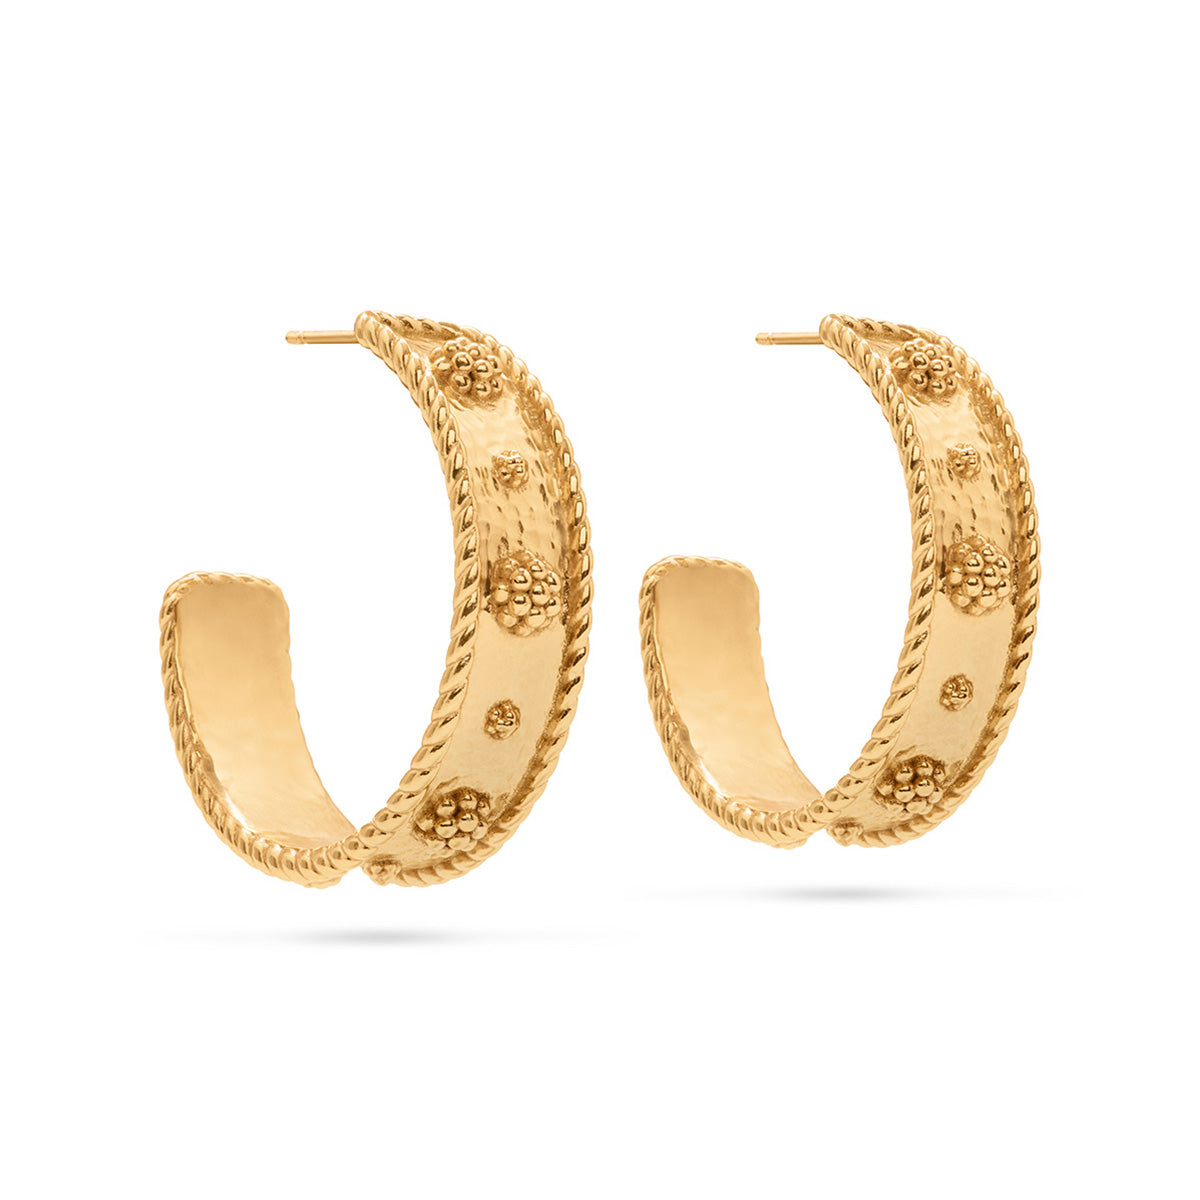 Berry Hoop Earrings in Hammered Gold